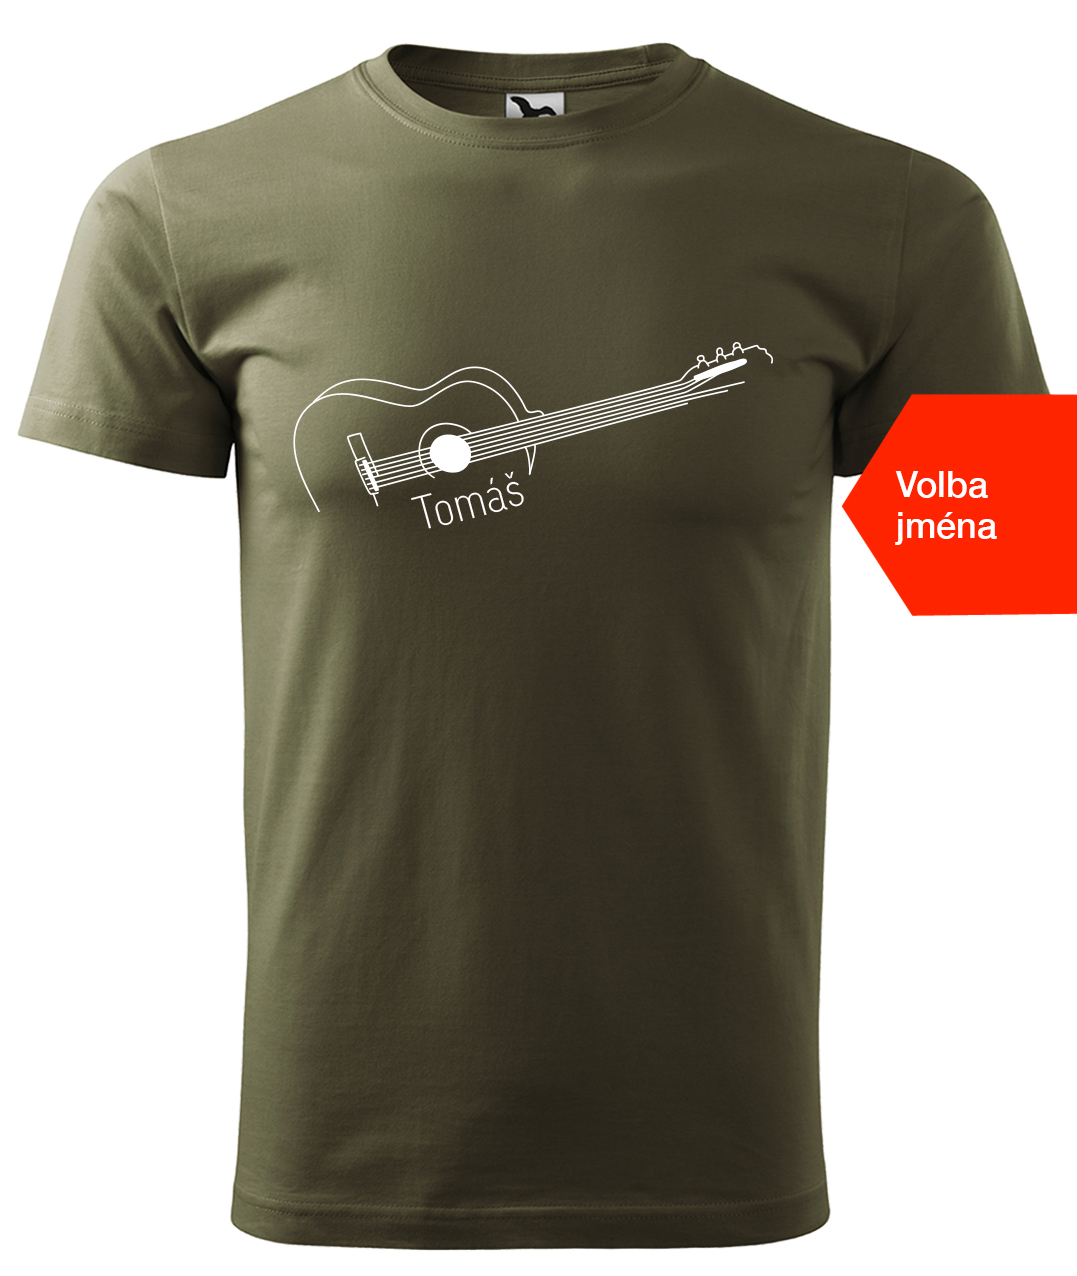 Dětské tričko s kytarou se jménem - Stylizovaná kytara Velikost: 12 let / 158 cm, Barva: Military (69), Délka rukávu: Krátký rukáv